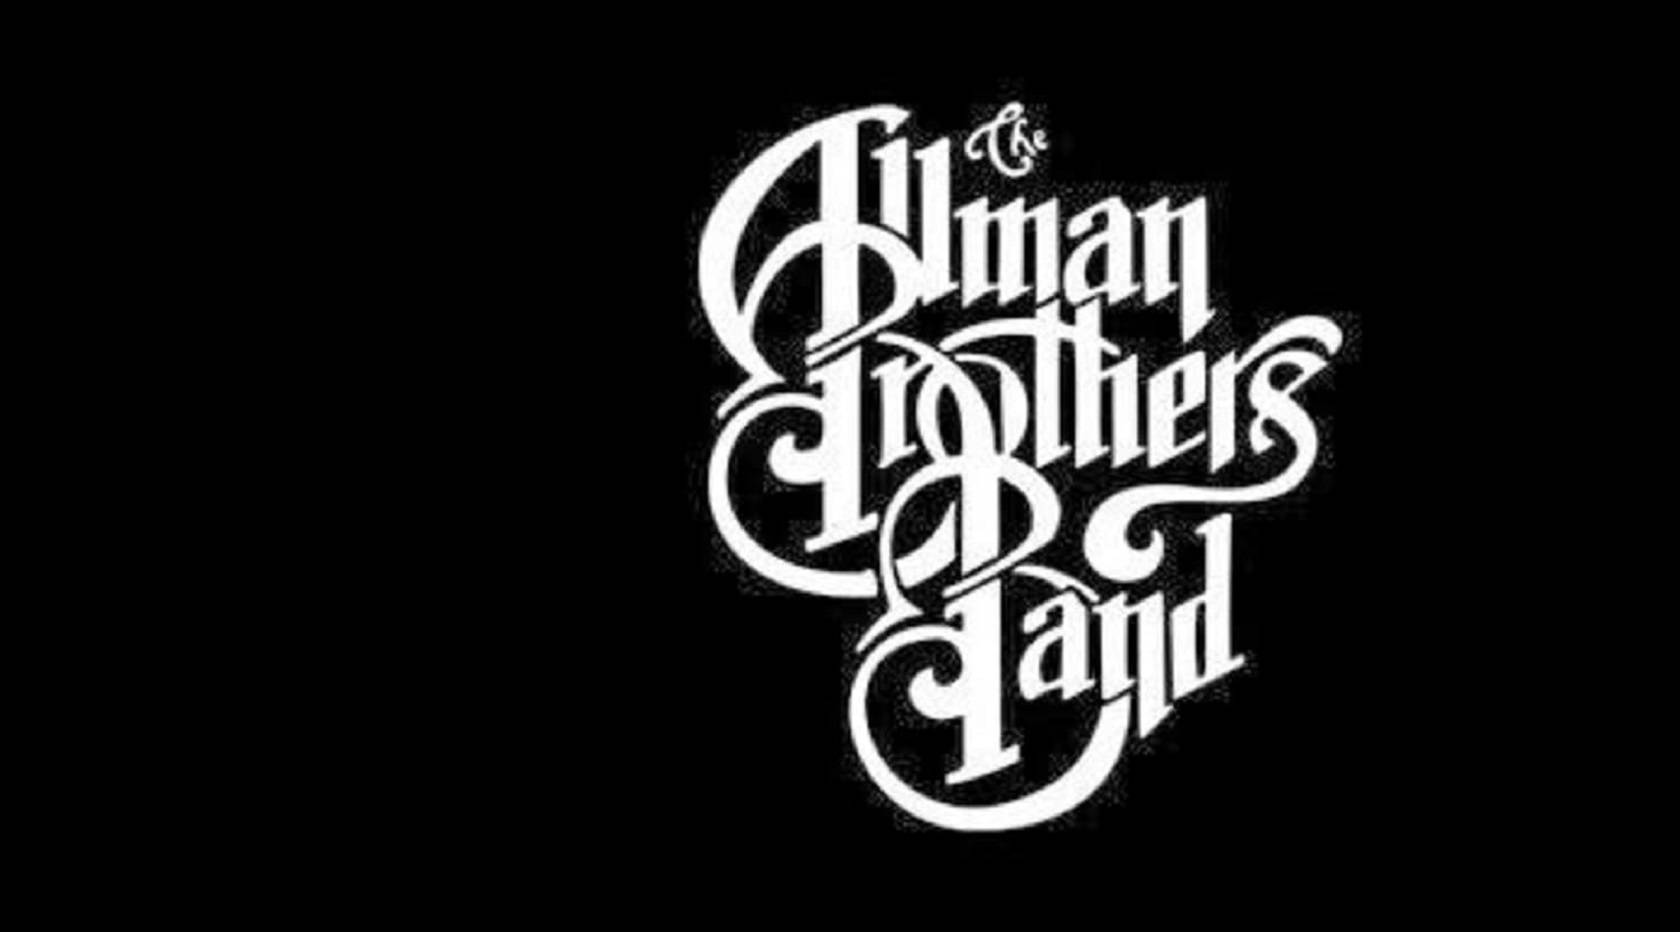 Gutessauberes Vergnügen Album Von Der Allman Brothers Band Wallpaper